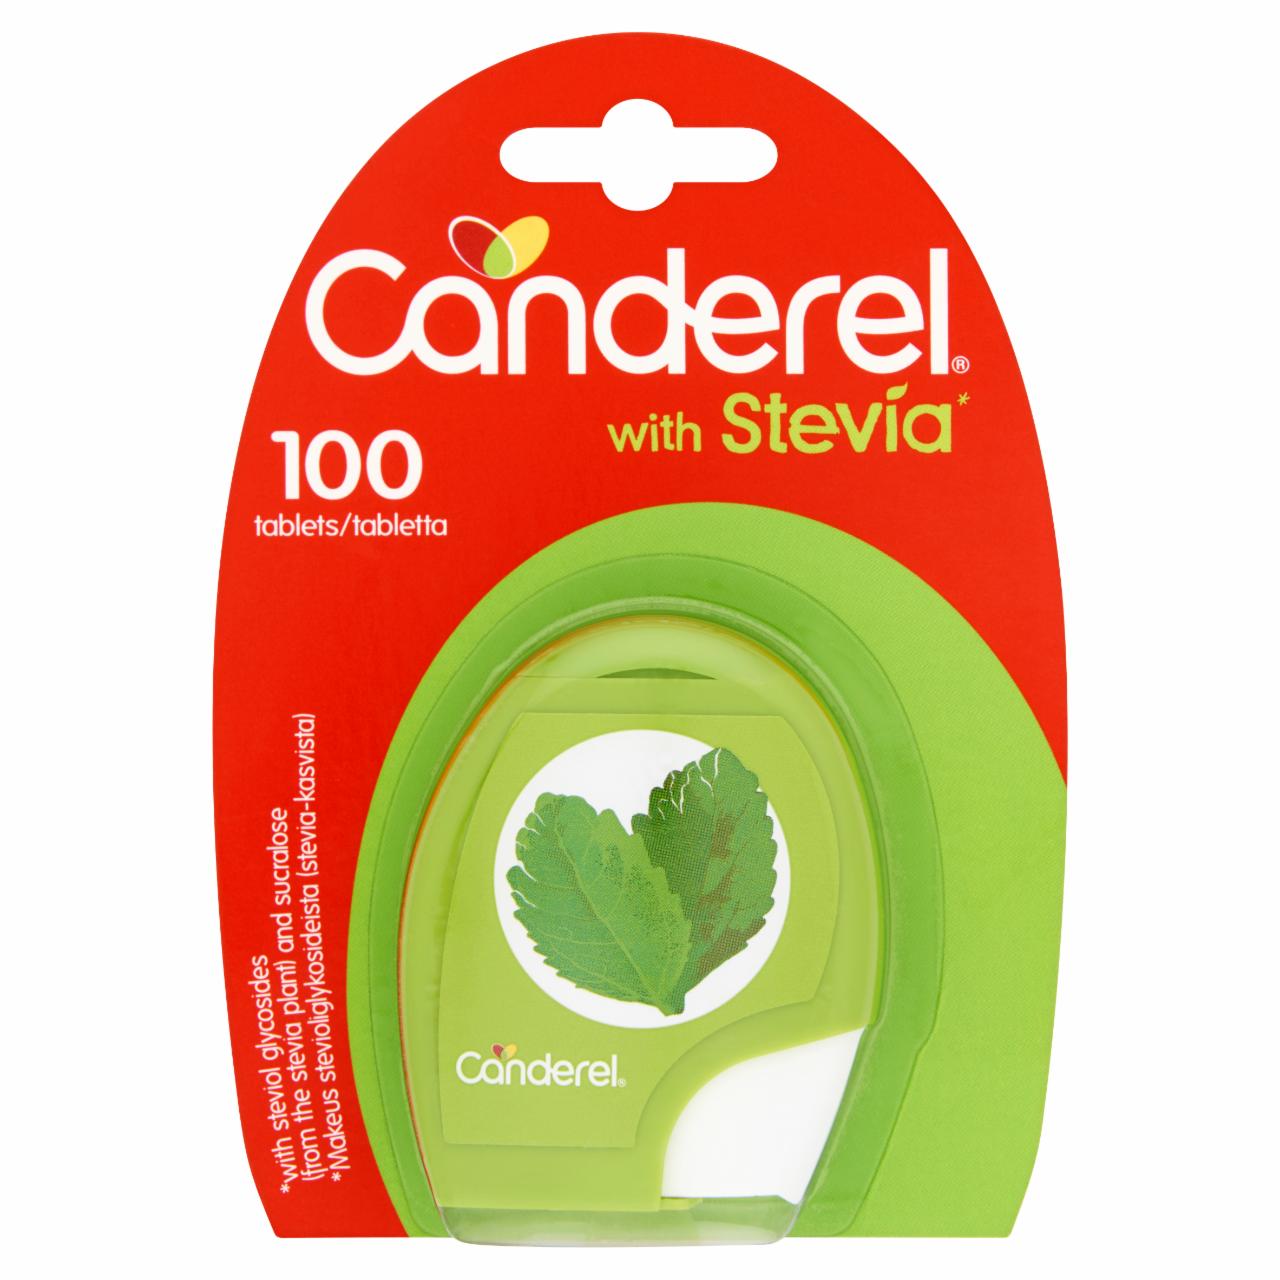 Képek - Canderel édesítőszer stevia növényből származó szteviol-glikoziddal és szukralózzal 100 db 8,5 g